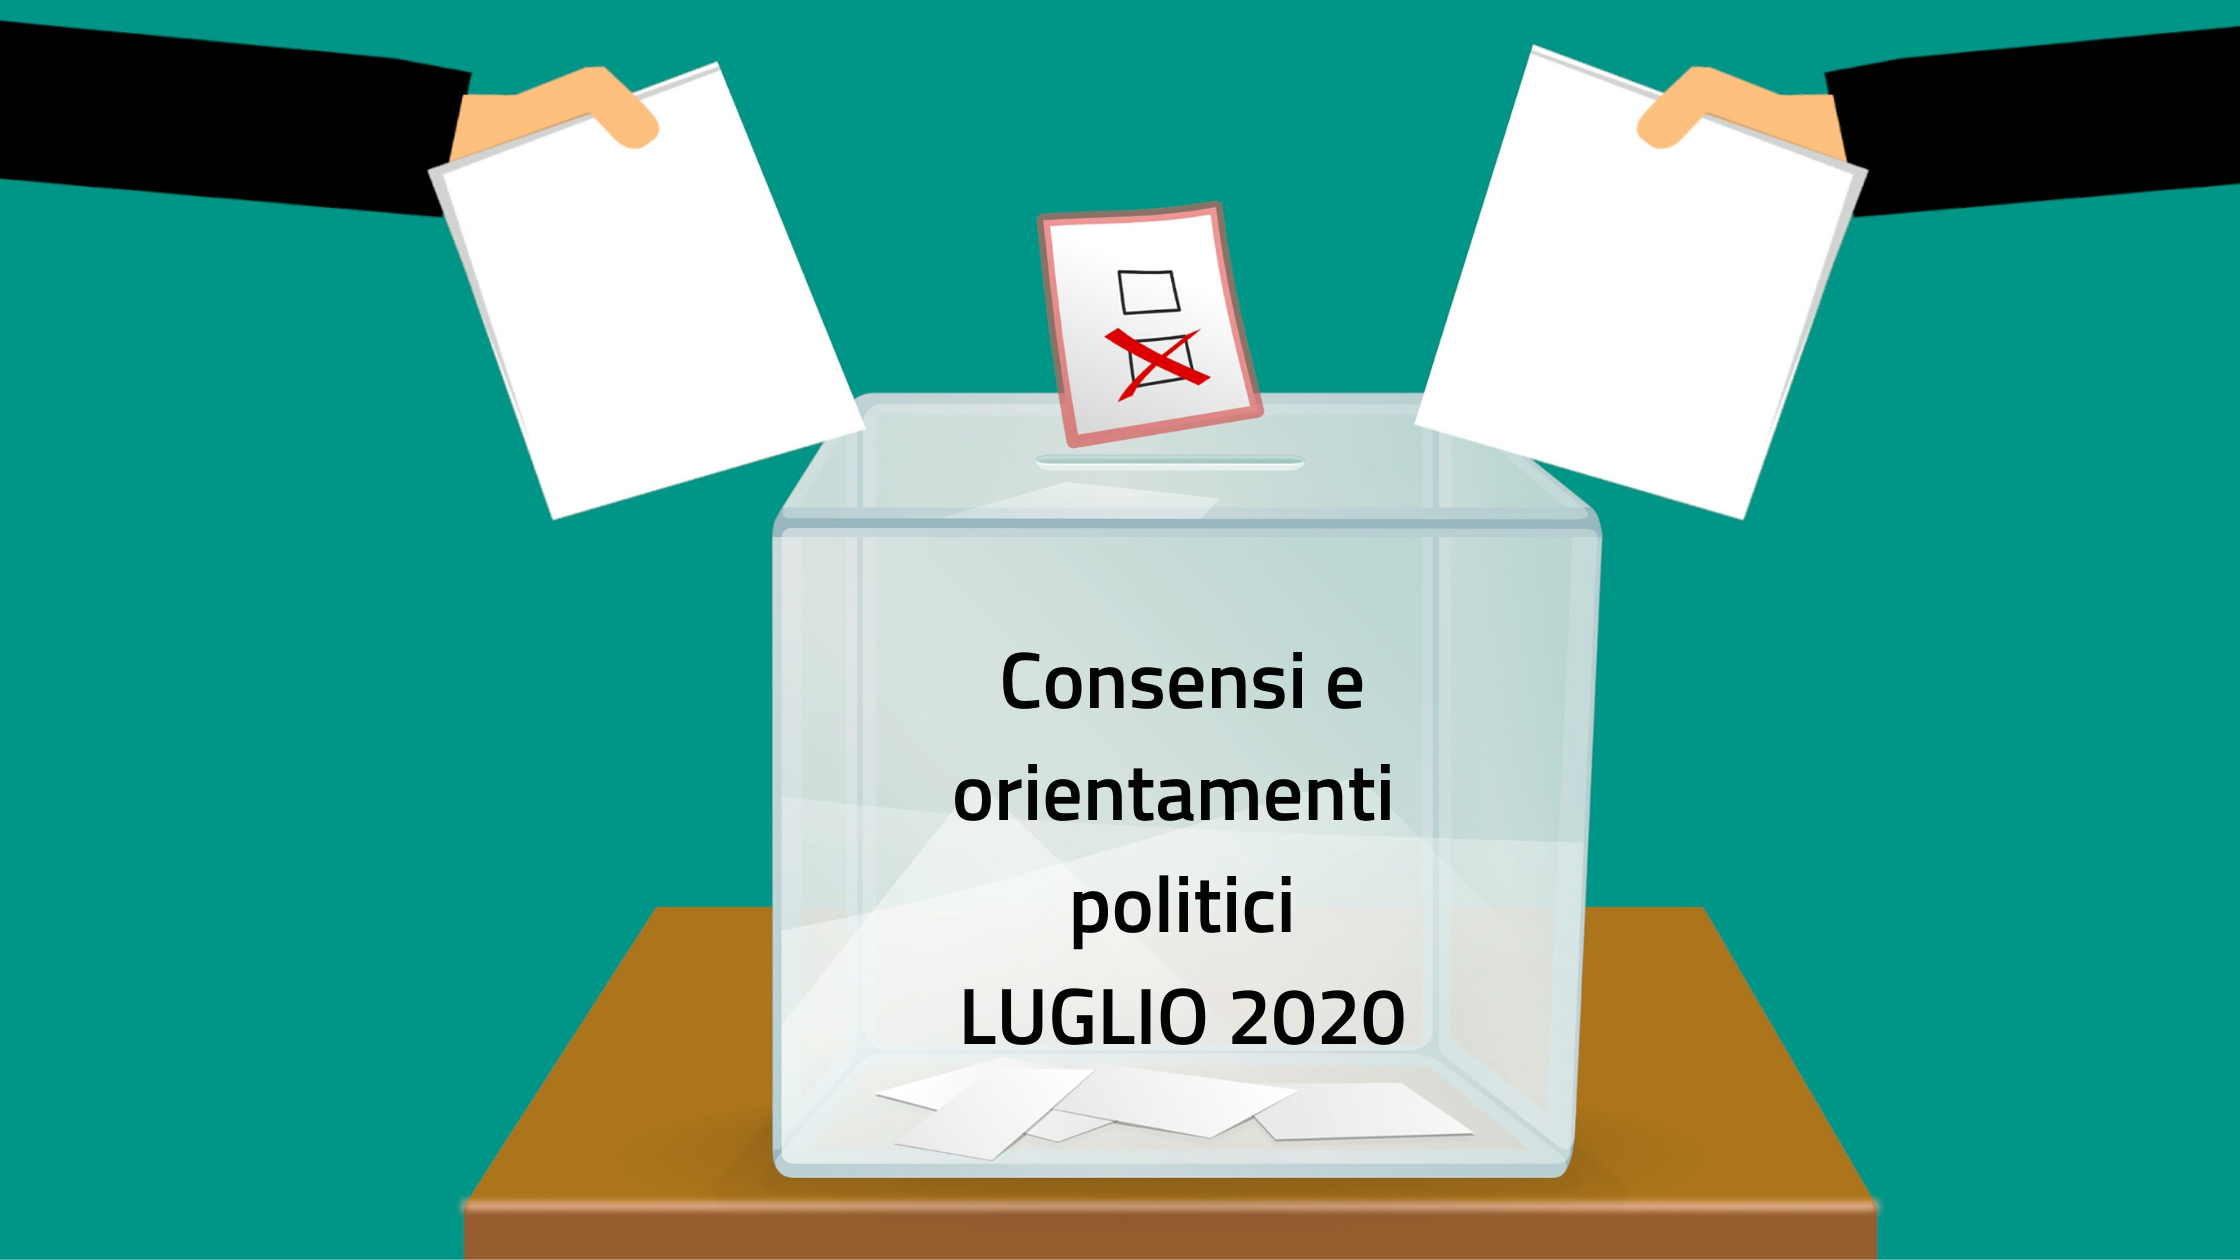 Consensi e orientamenti politici LUGLIO 2020.png